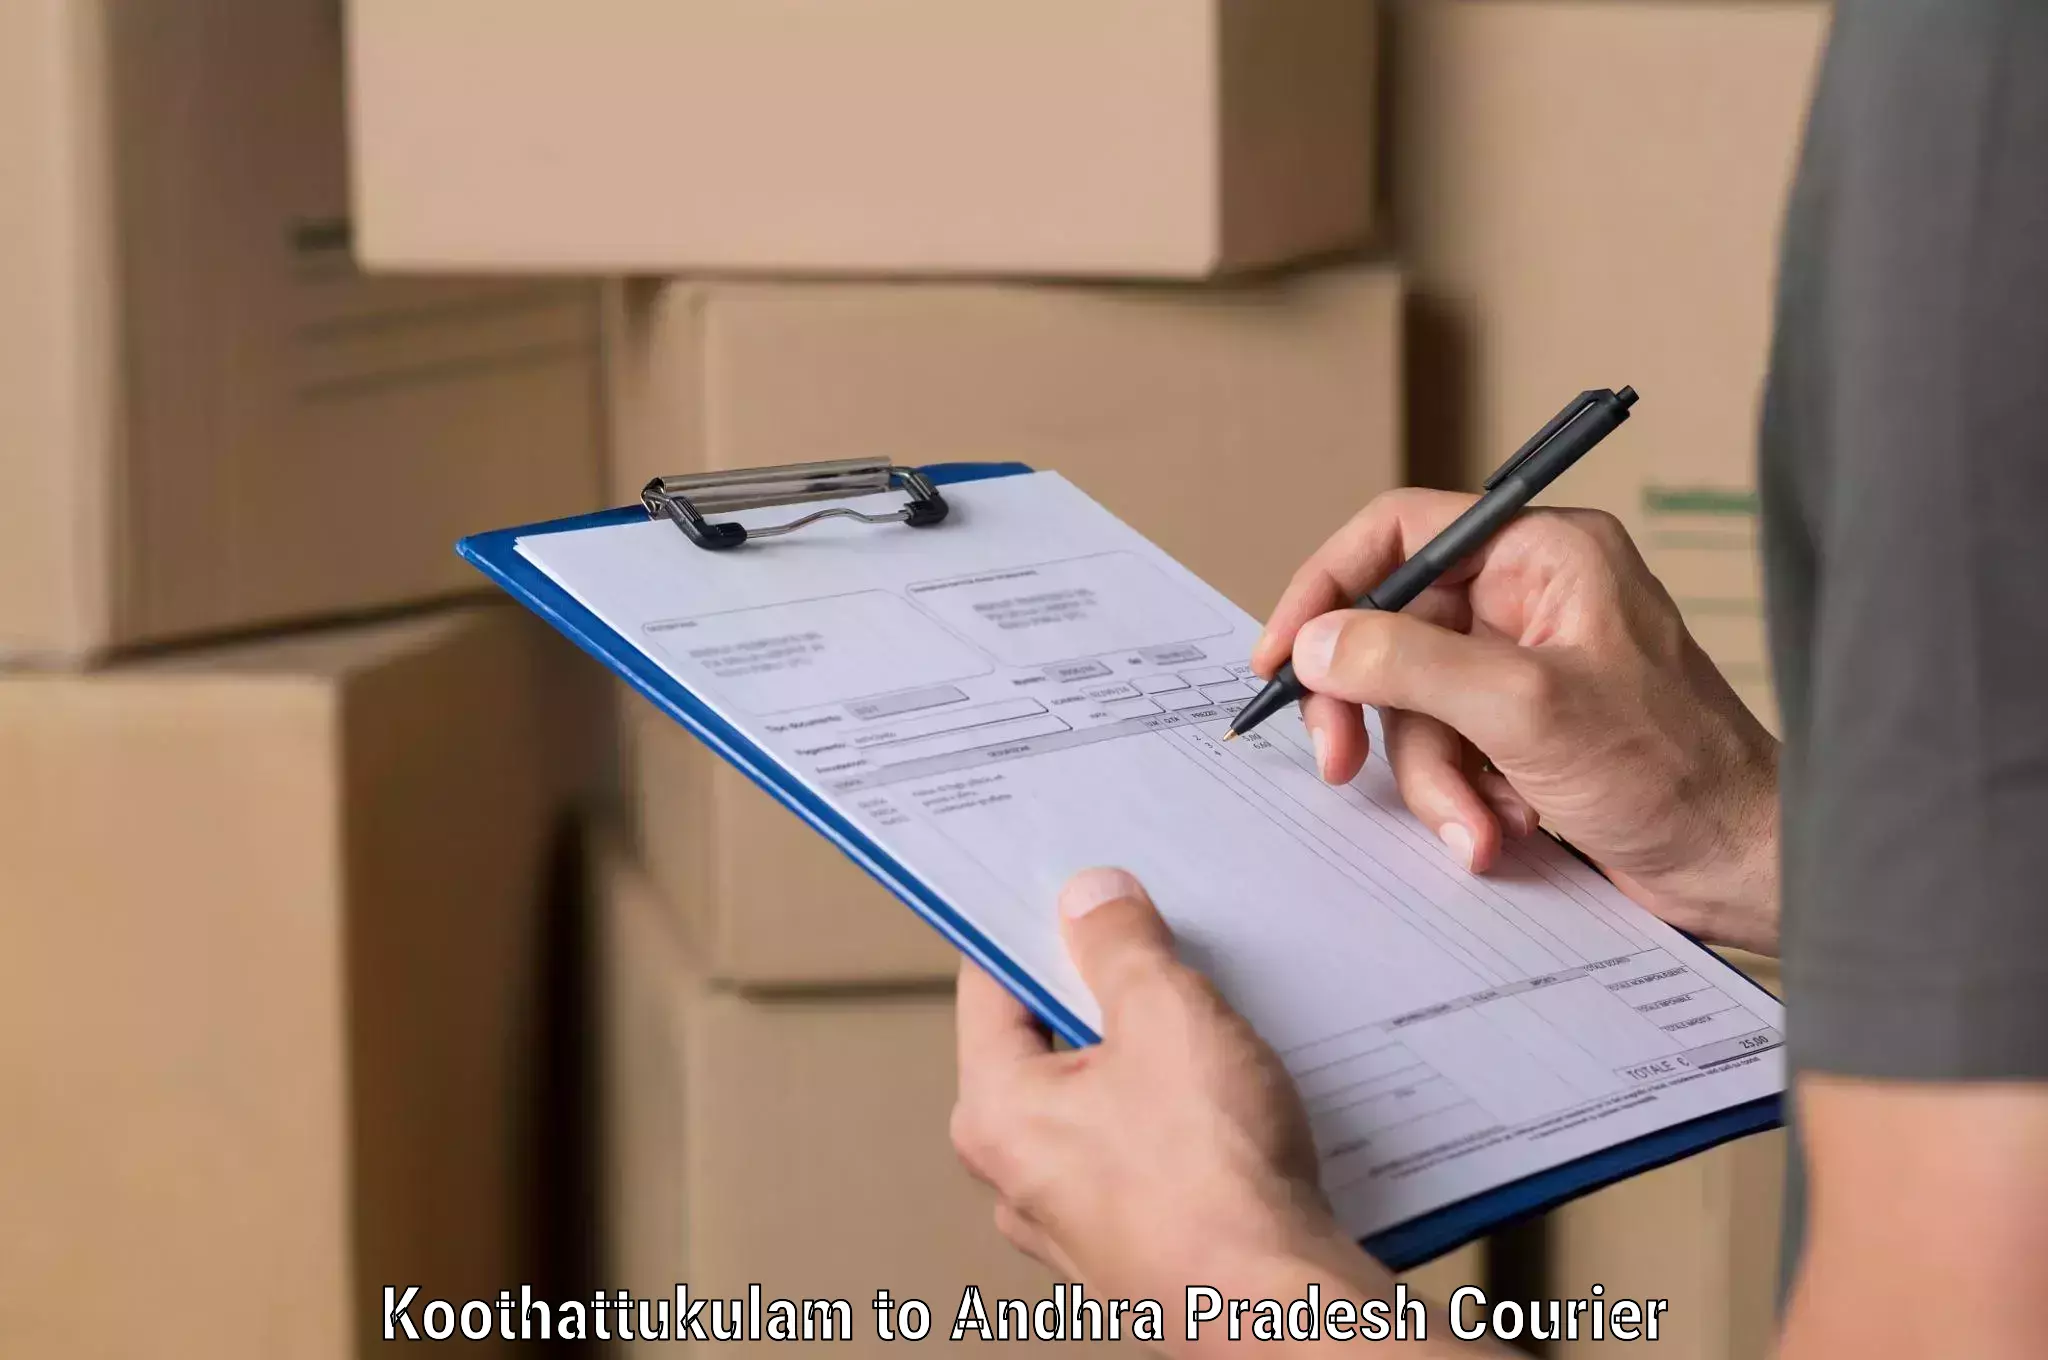 Professional courier handling Koothattukulam to Chillakallu